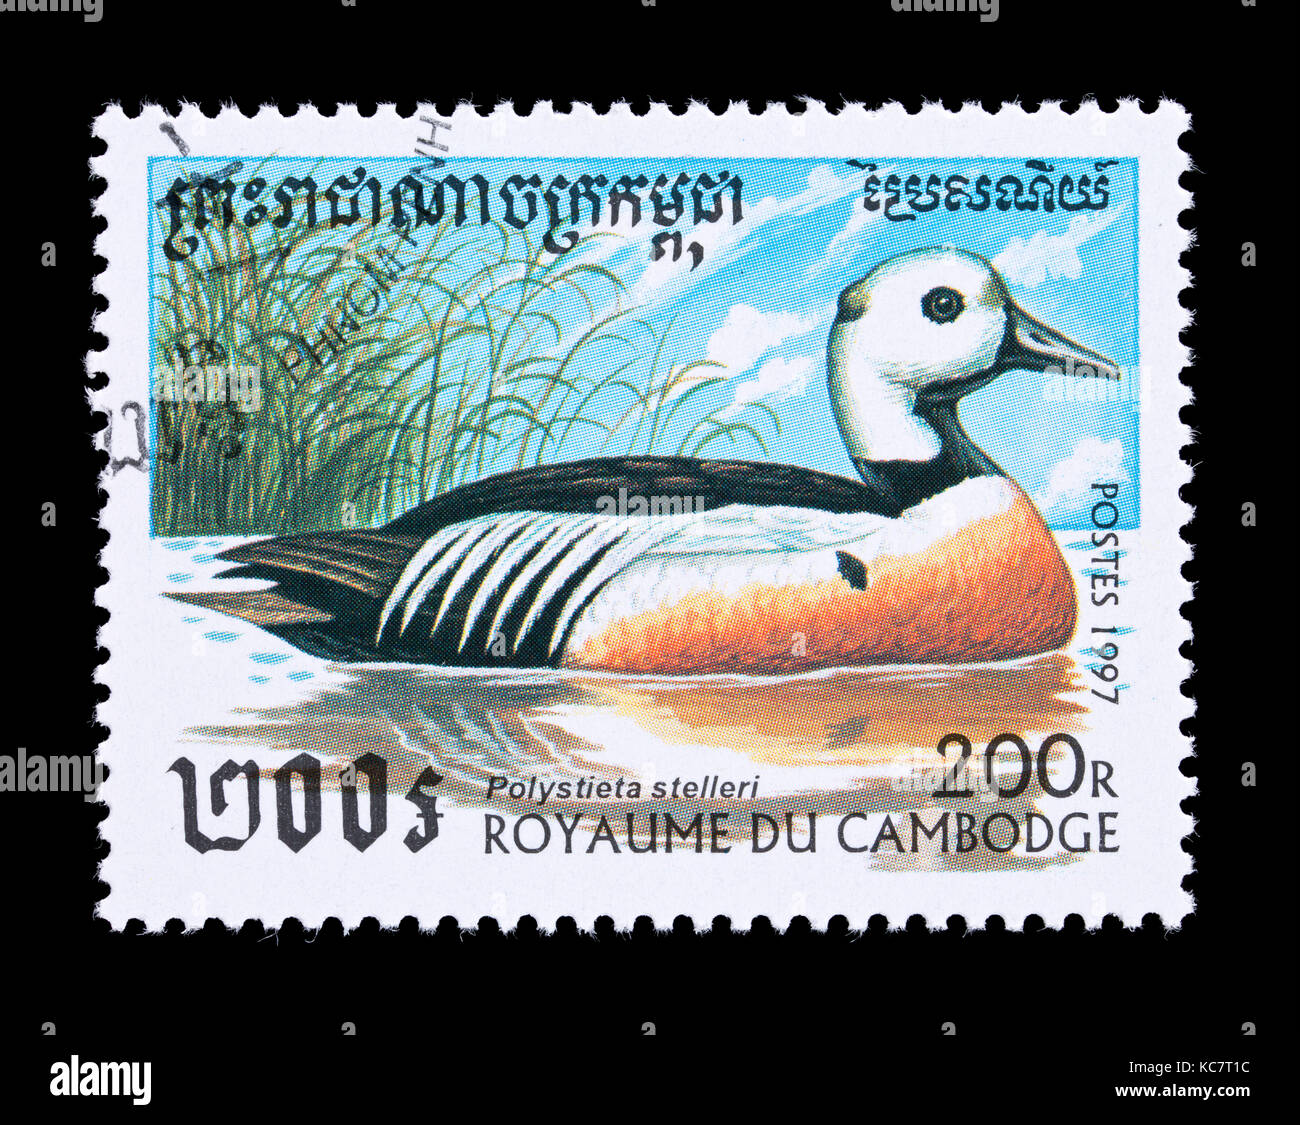 Timbre-poste représentant du Cambodge'eider de Steller (Polysticta stelleri) Banque D'Images